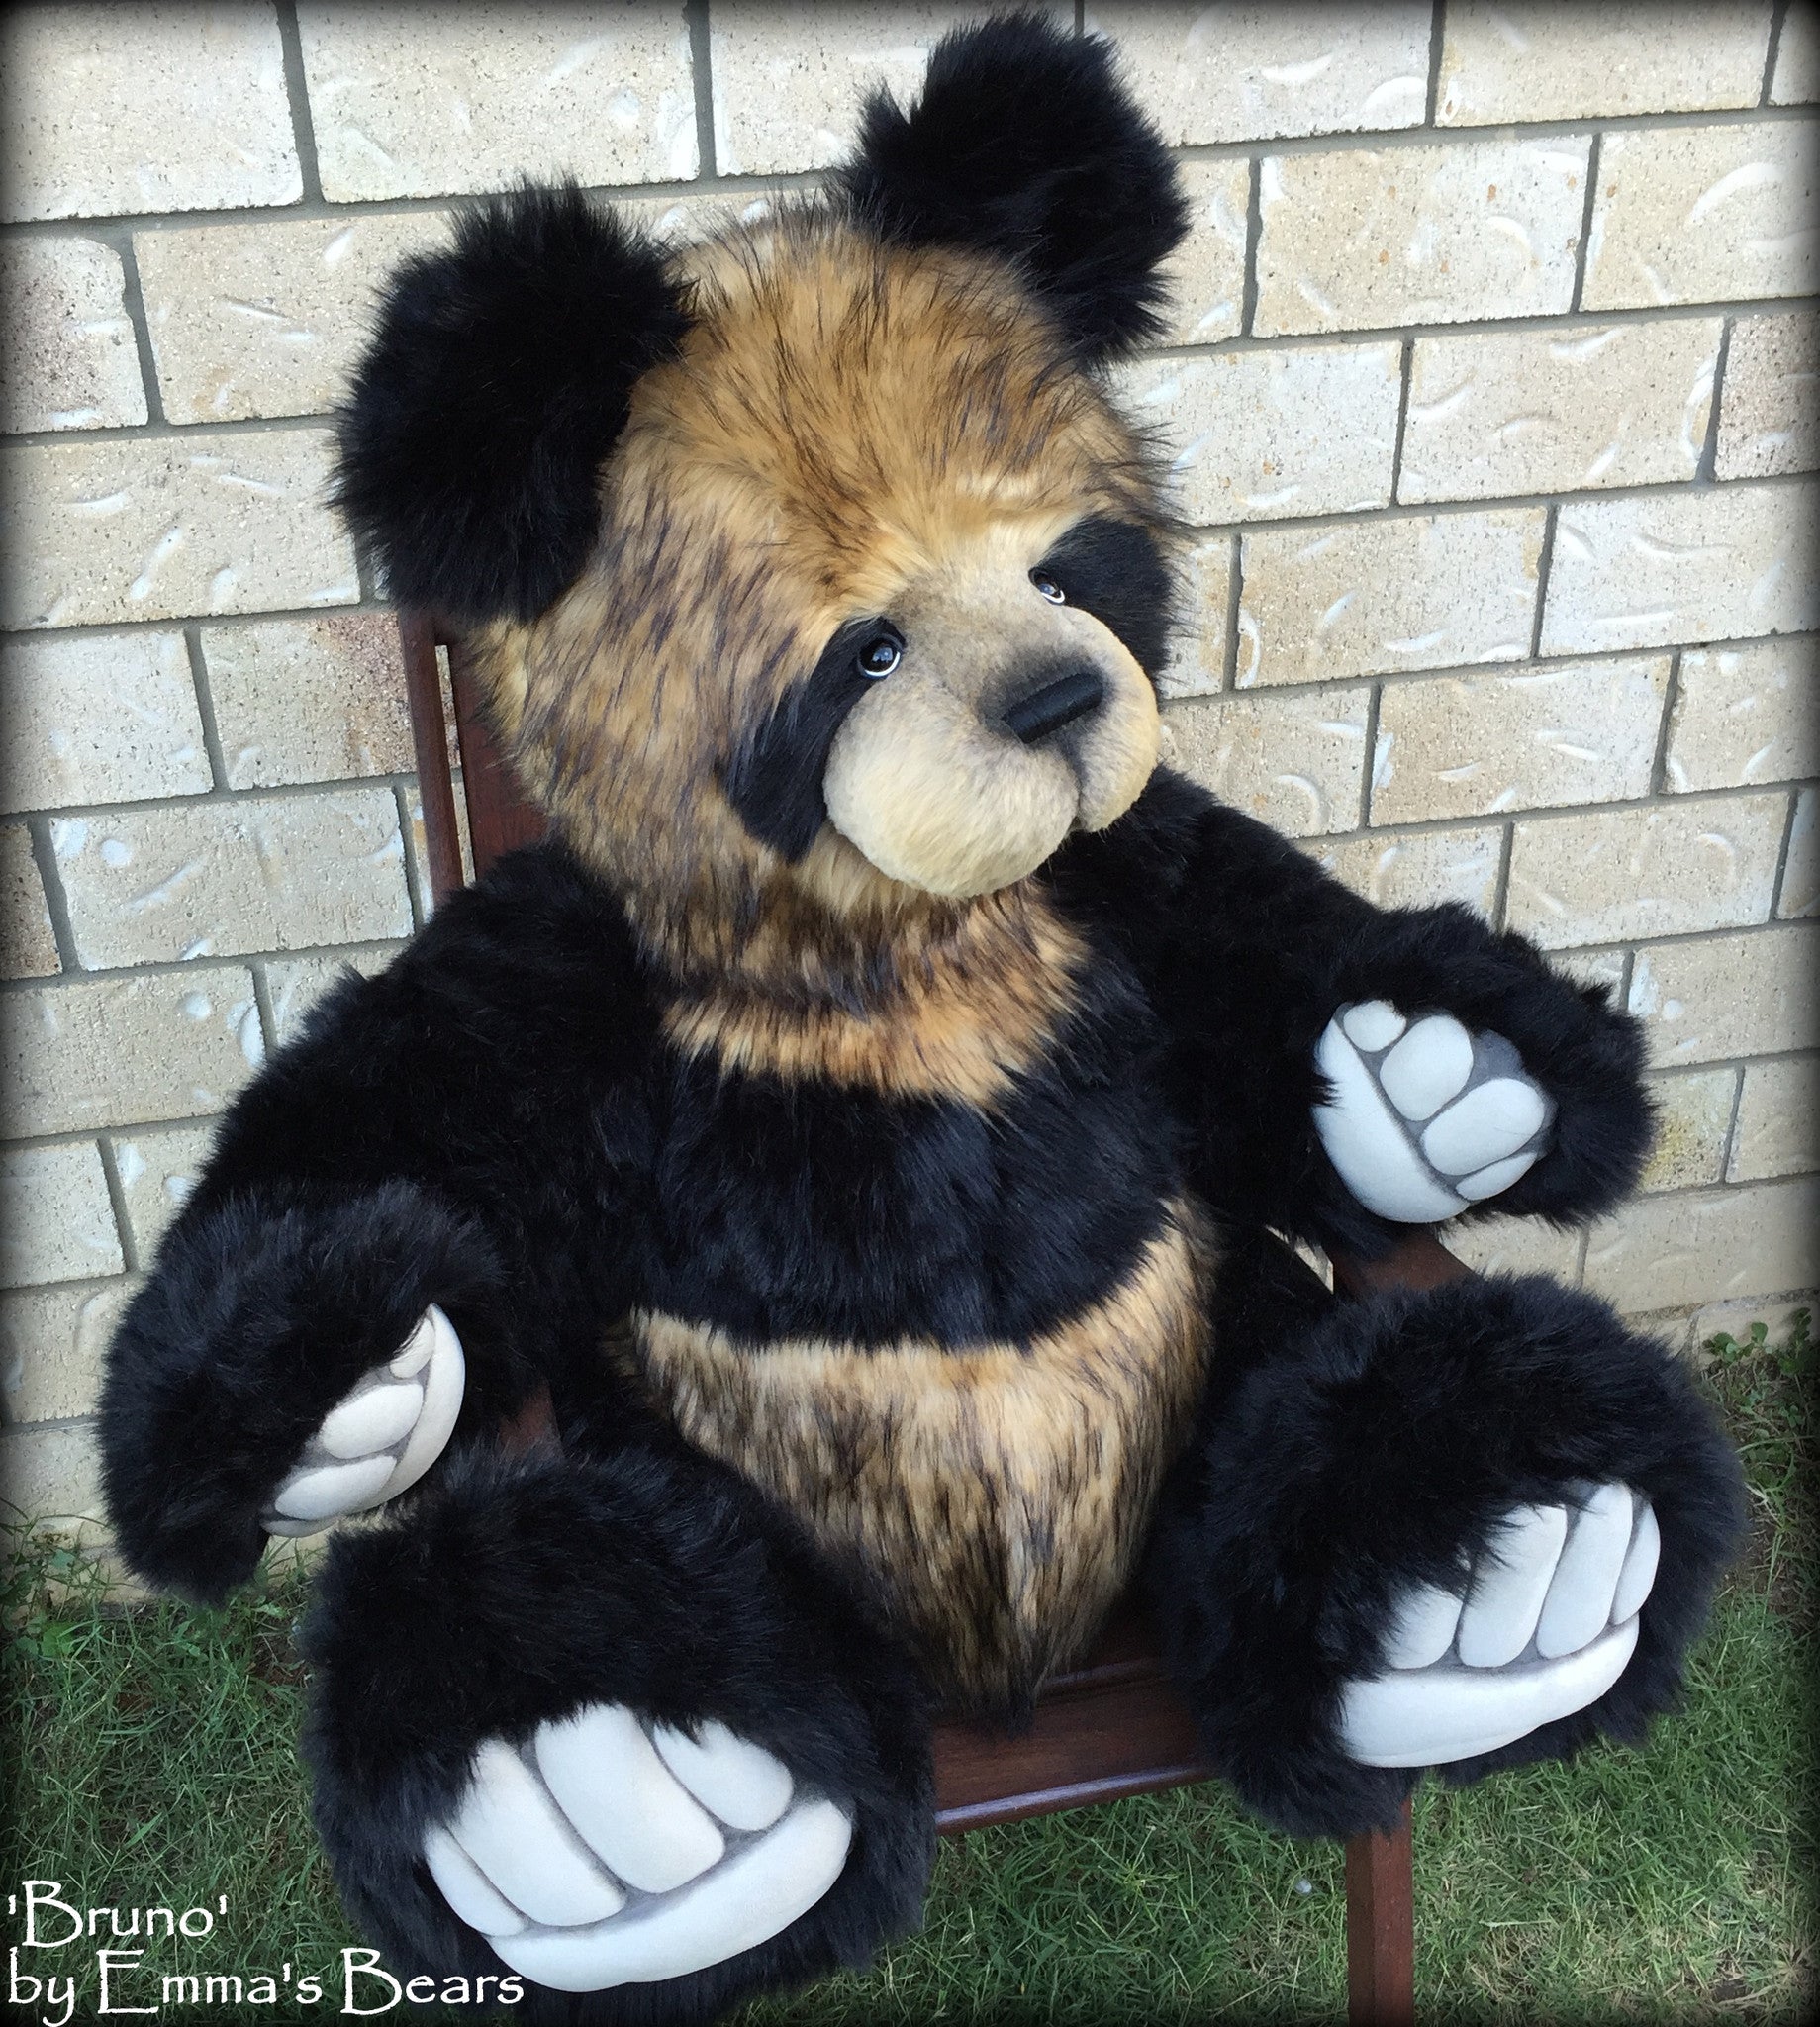 Bruno - 44IN HUGE panda bear by Emmas Bears - OOAK